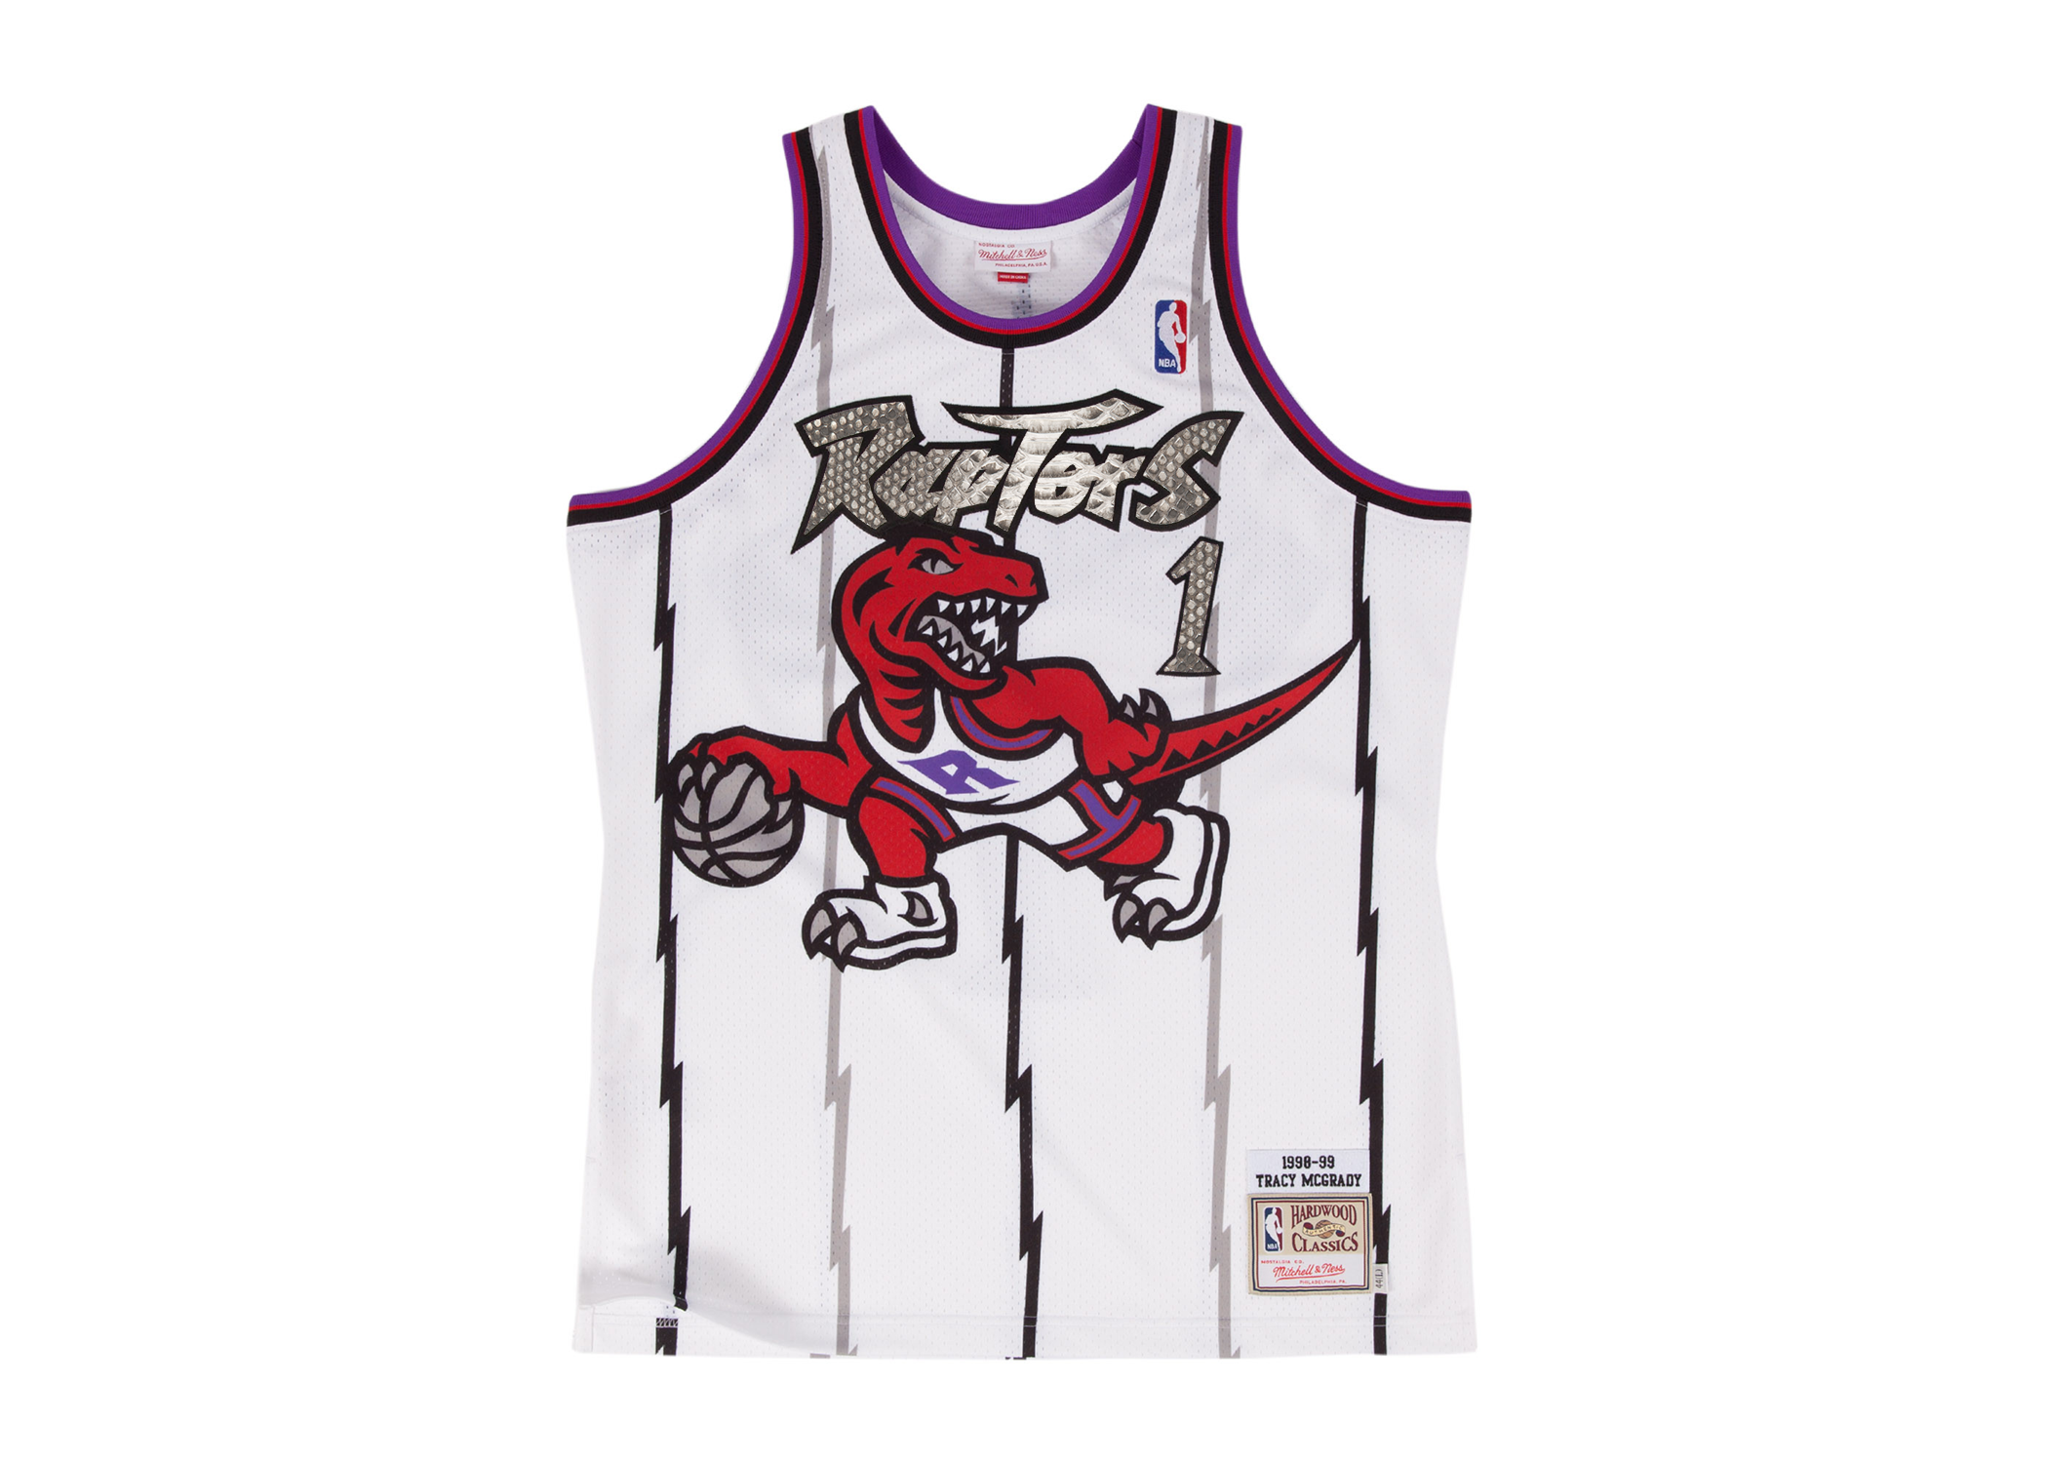 1999 raptors jersey